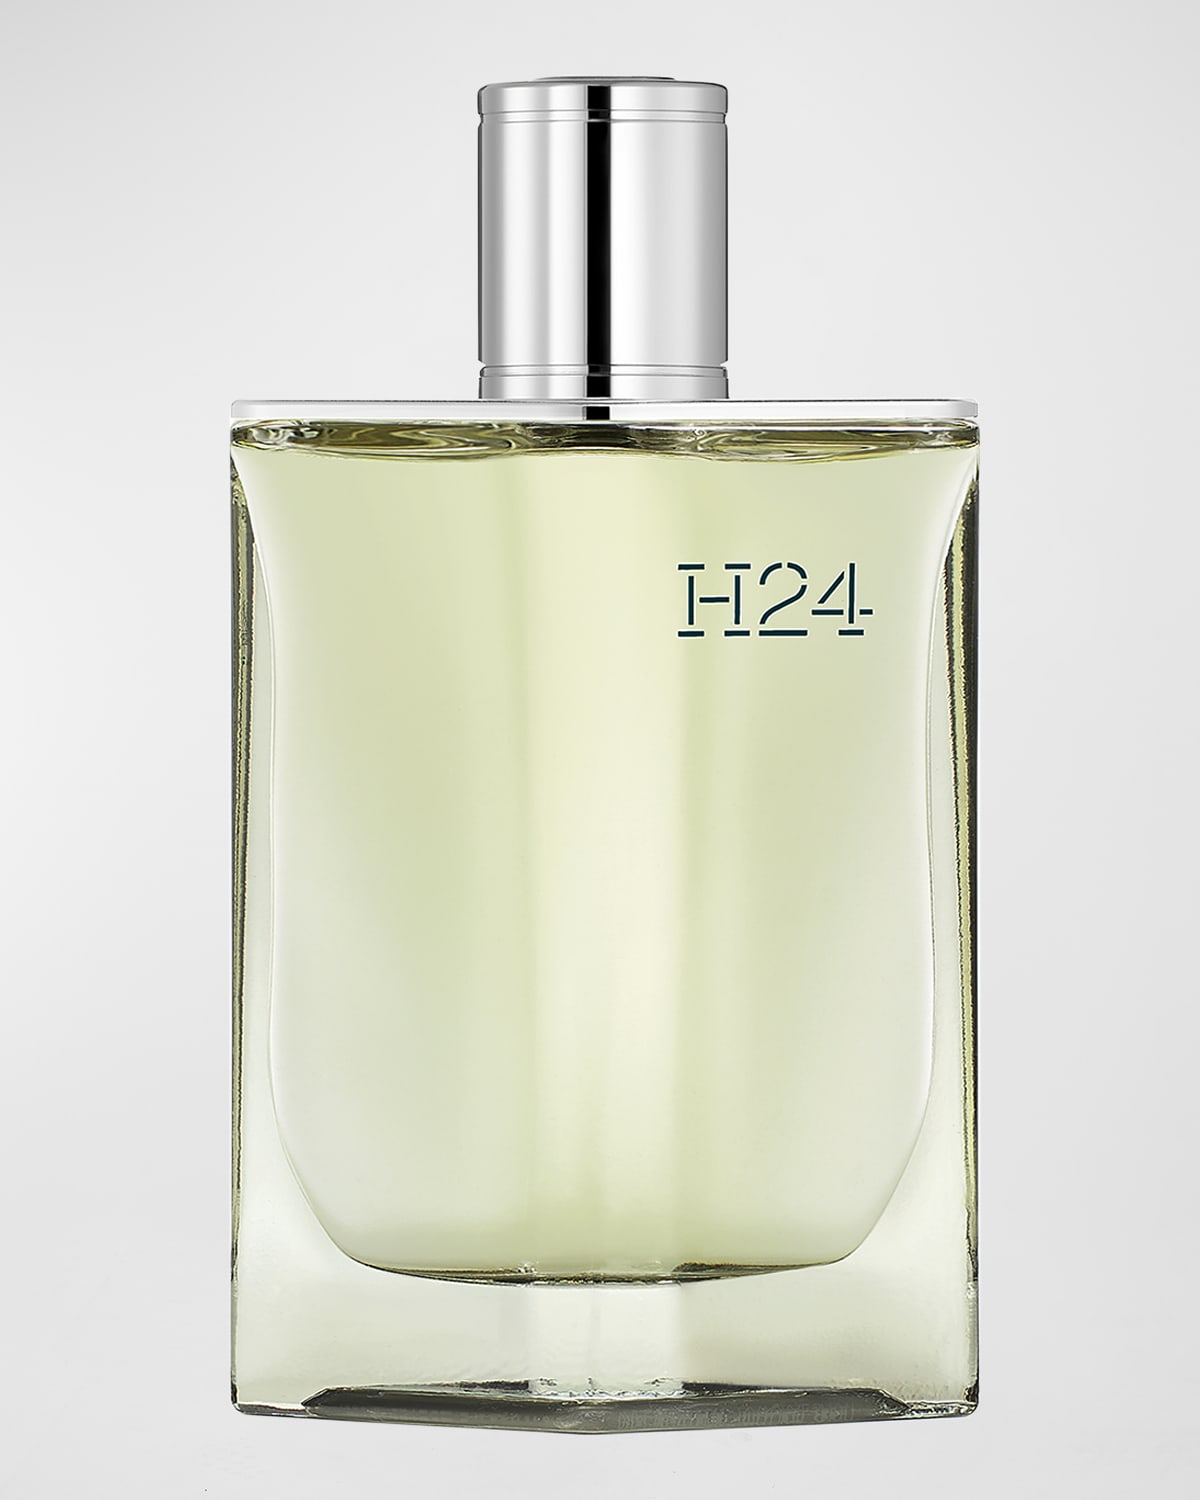 H24 Eau de Parfum, 3.4 oz.